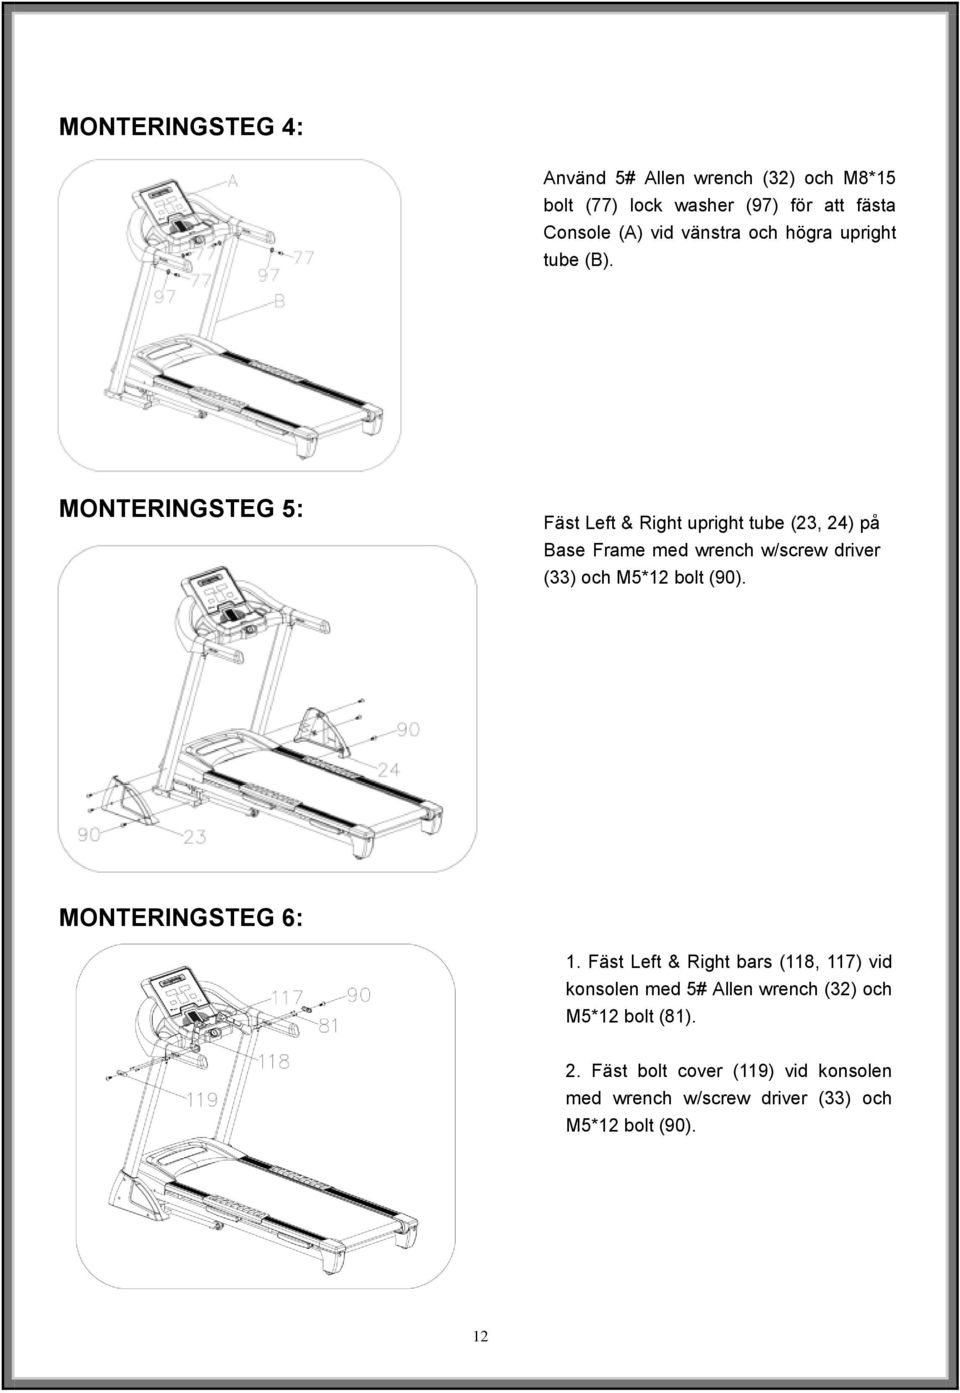 MONTERINGSTEG 5: Fäst Left & Right upright tube (23, 24) på Base Frame med wrench w/screw driver (33) och M5*12 bolt